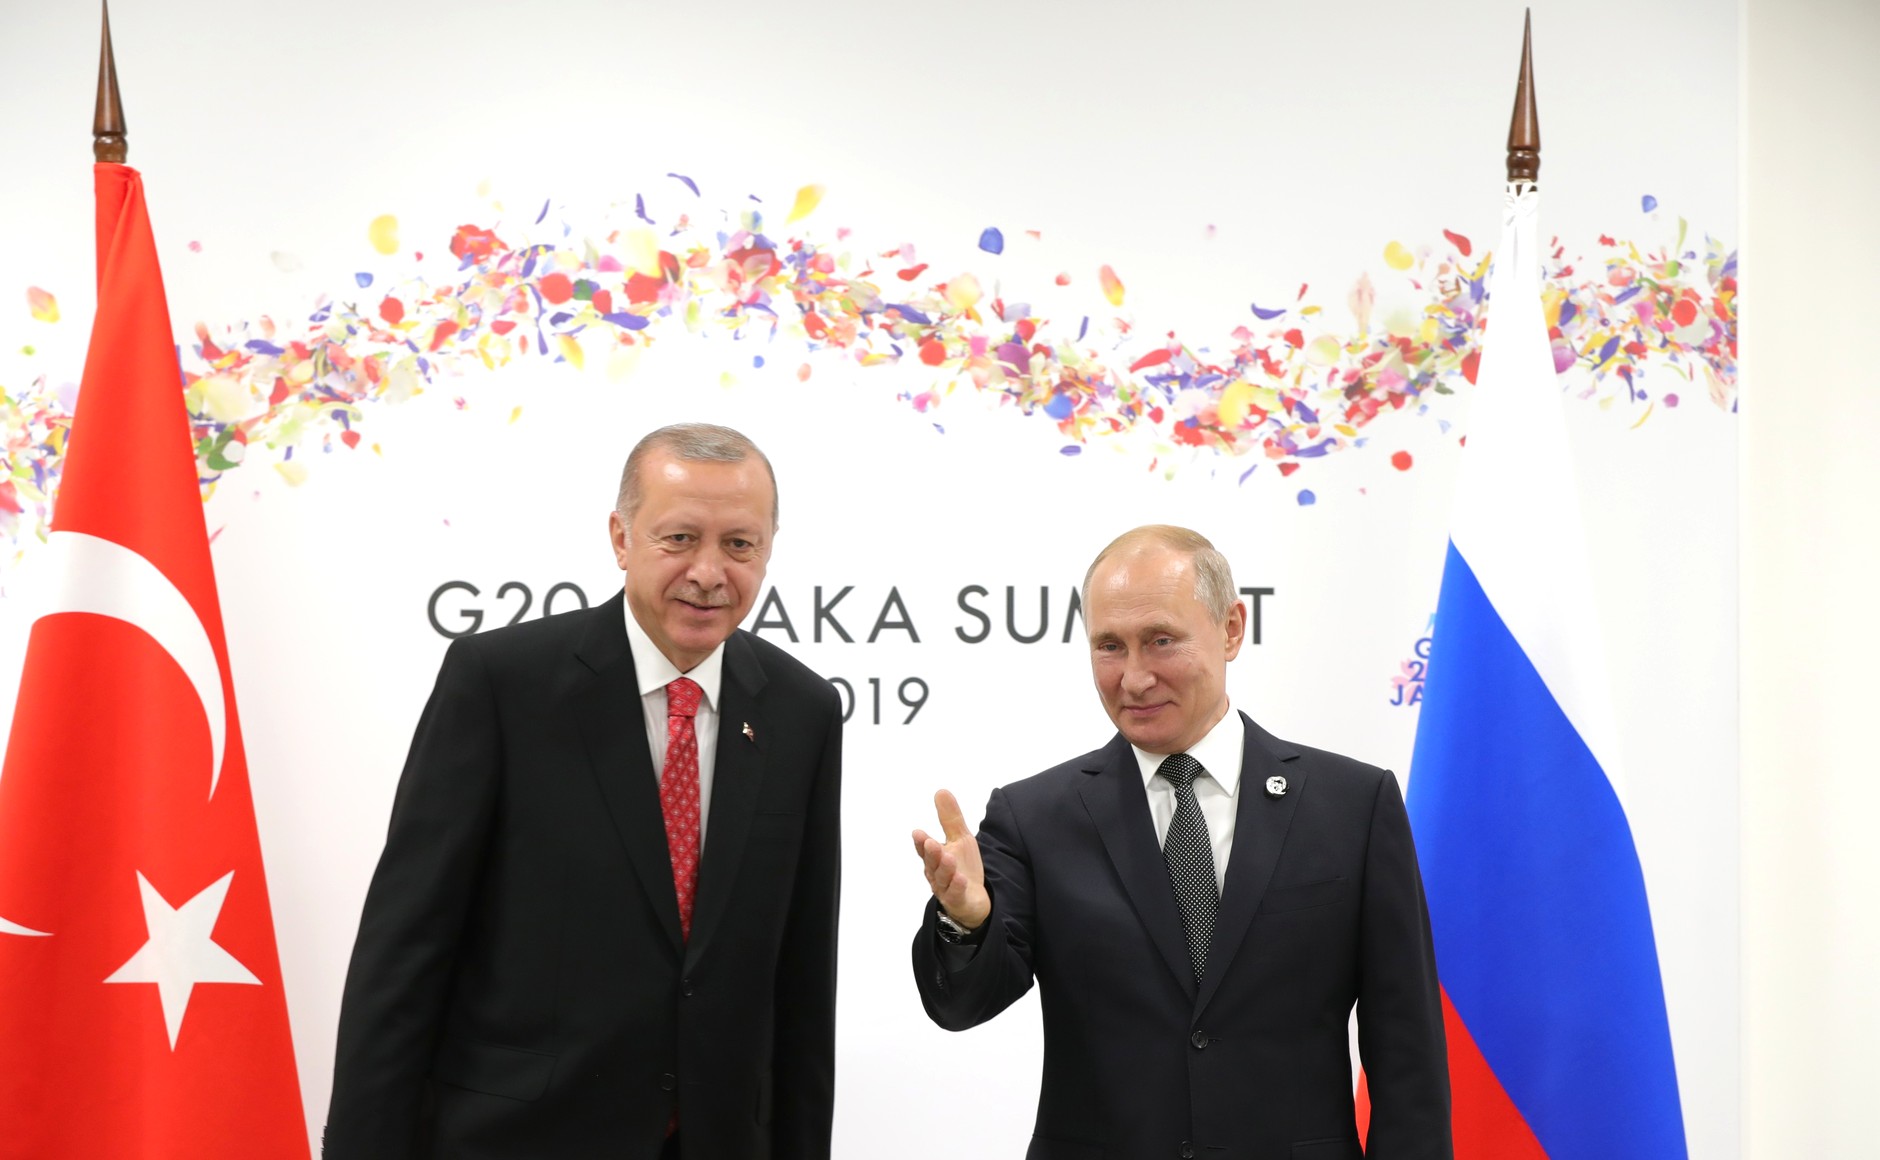 El presidente ruso Vladimir Putin junto con su par turco Recep Tayyip Erdogan en la Cumbre G20 en Japón, en junio. Foto: Kremlin.ru